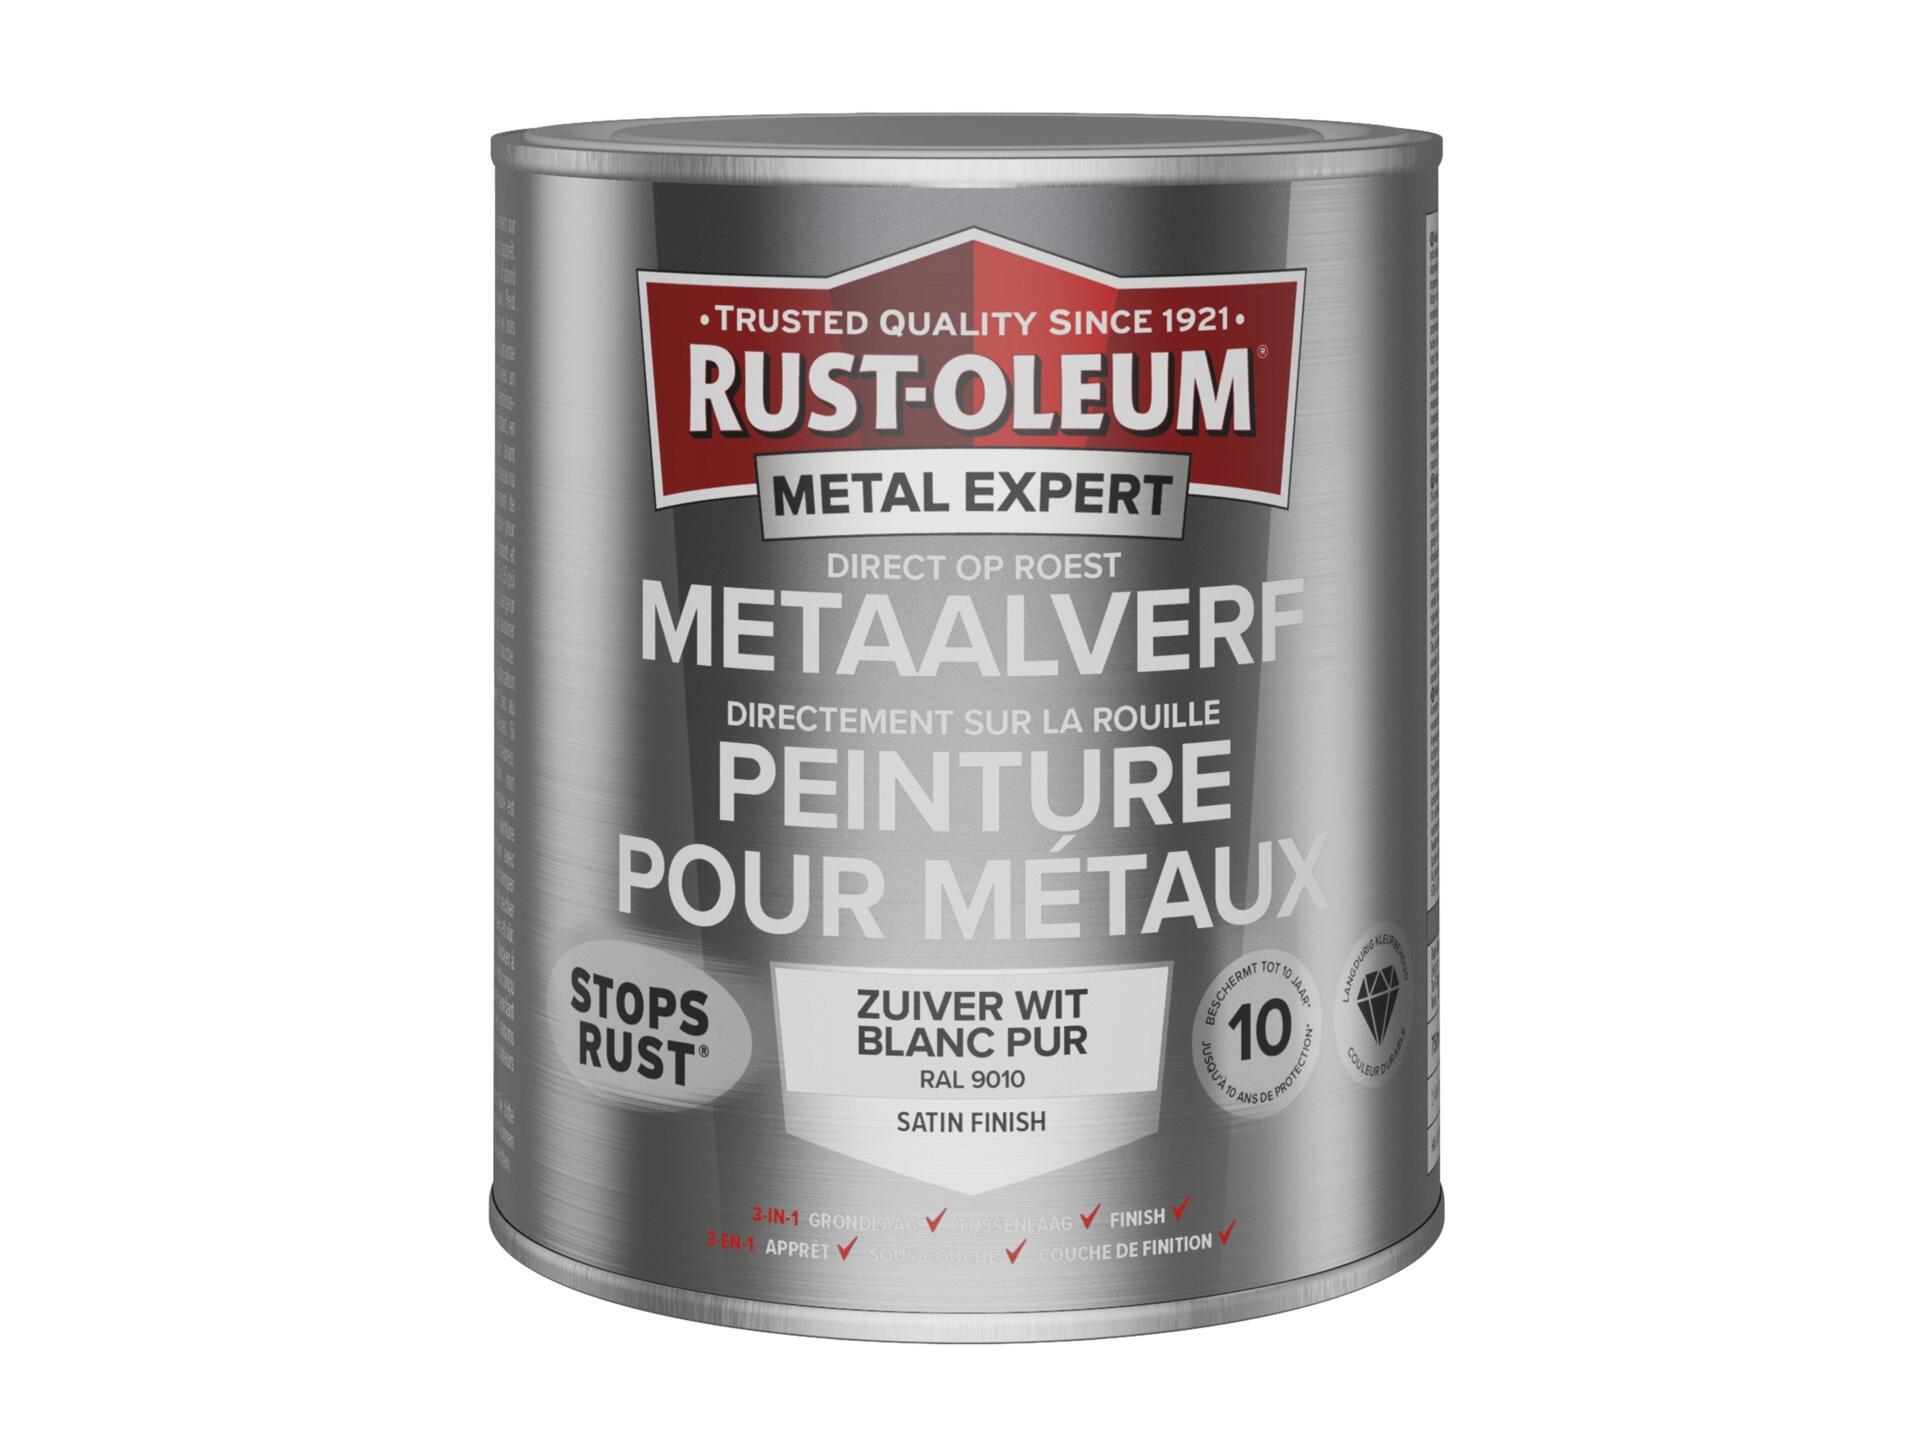 Rust-oleum Metal Expert peinture pour métaux satin 750ml blanc pur